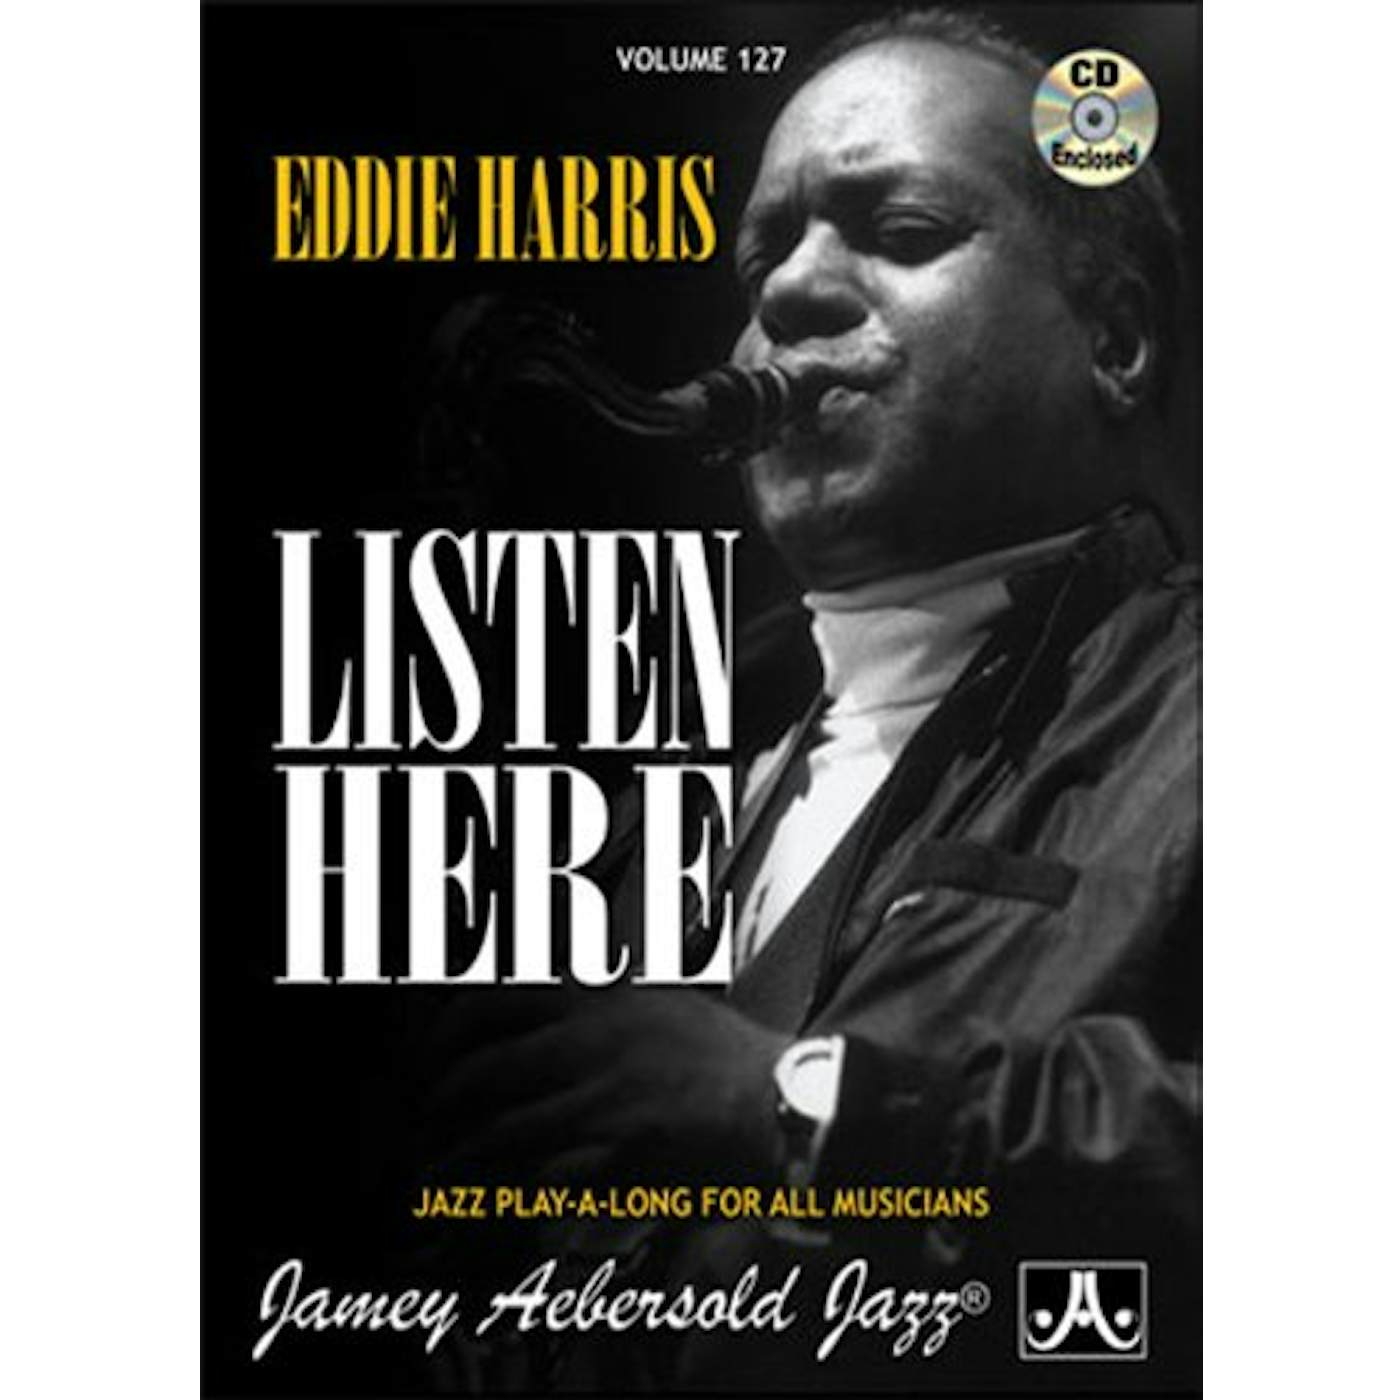 Jamey Aebersold EDDIE HARRIS CD